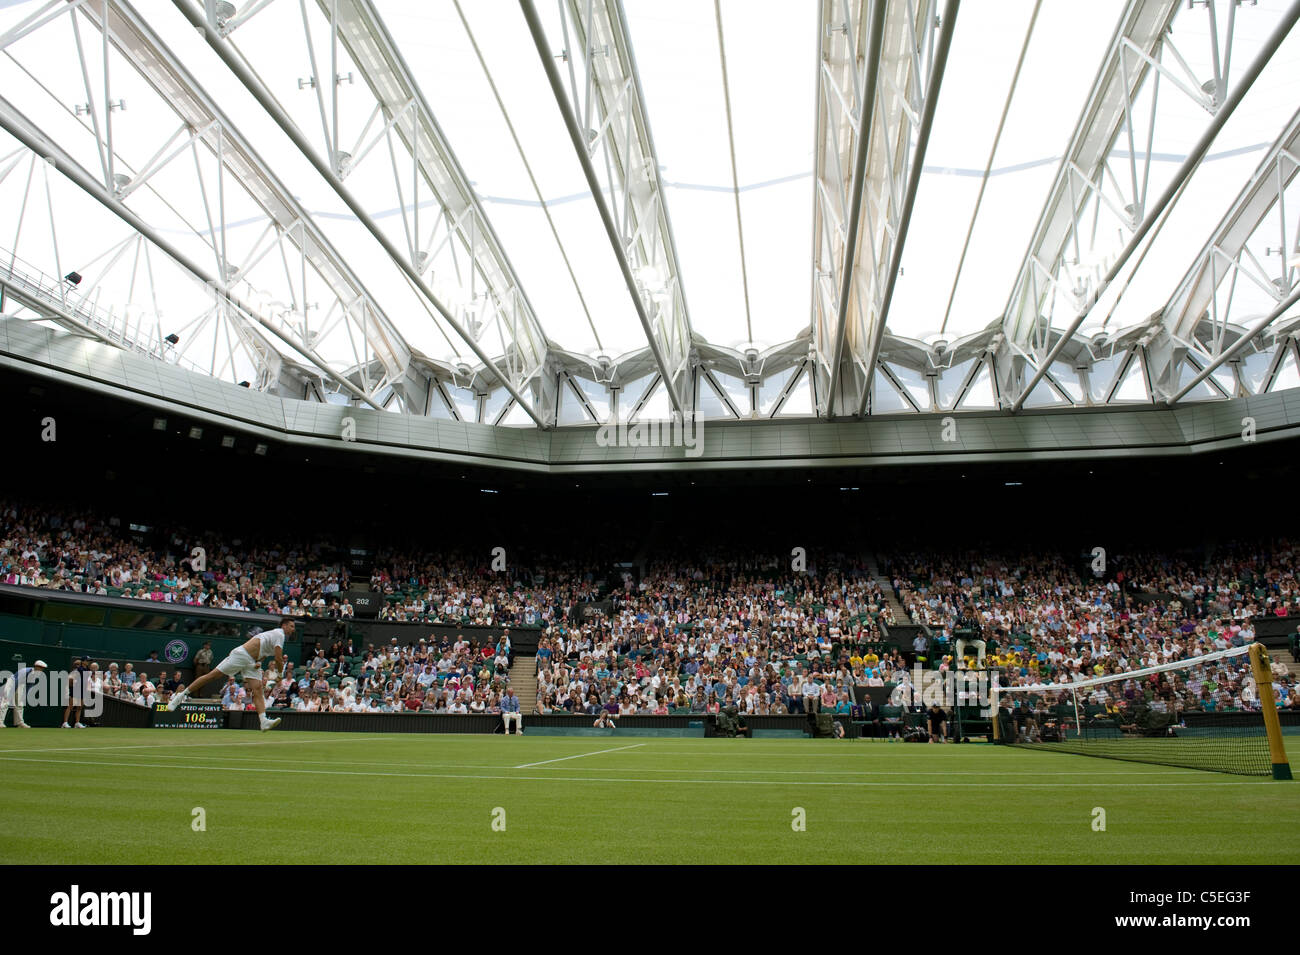 Vue de jouer sur le Court central avec un toit fermé durant l'édition 2011 des Championnats de tennis de Wimbledon Banque D'Images